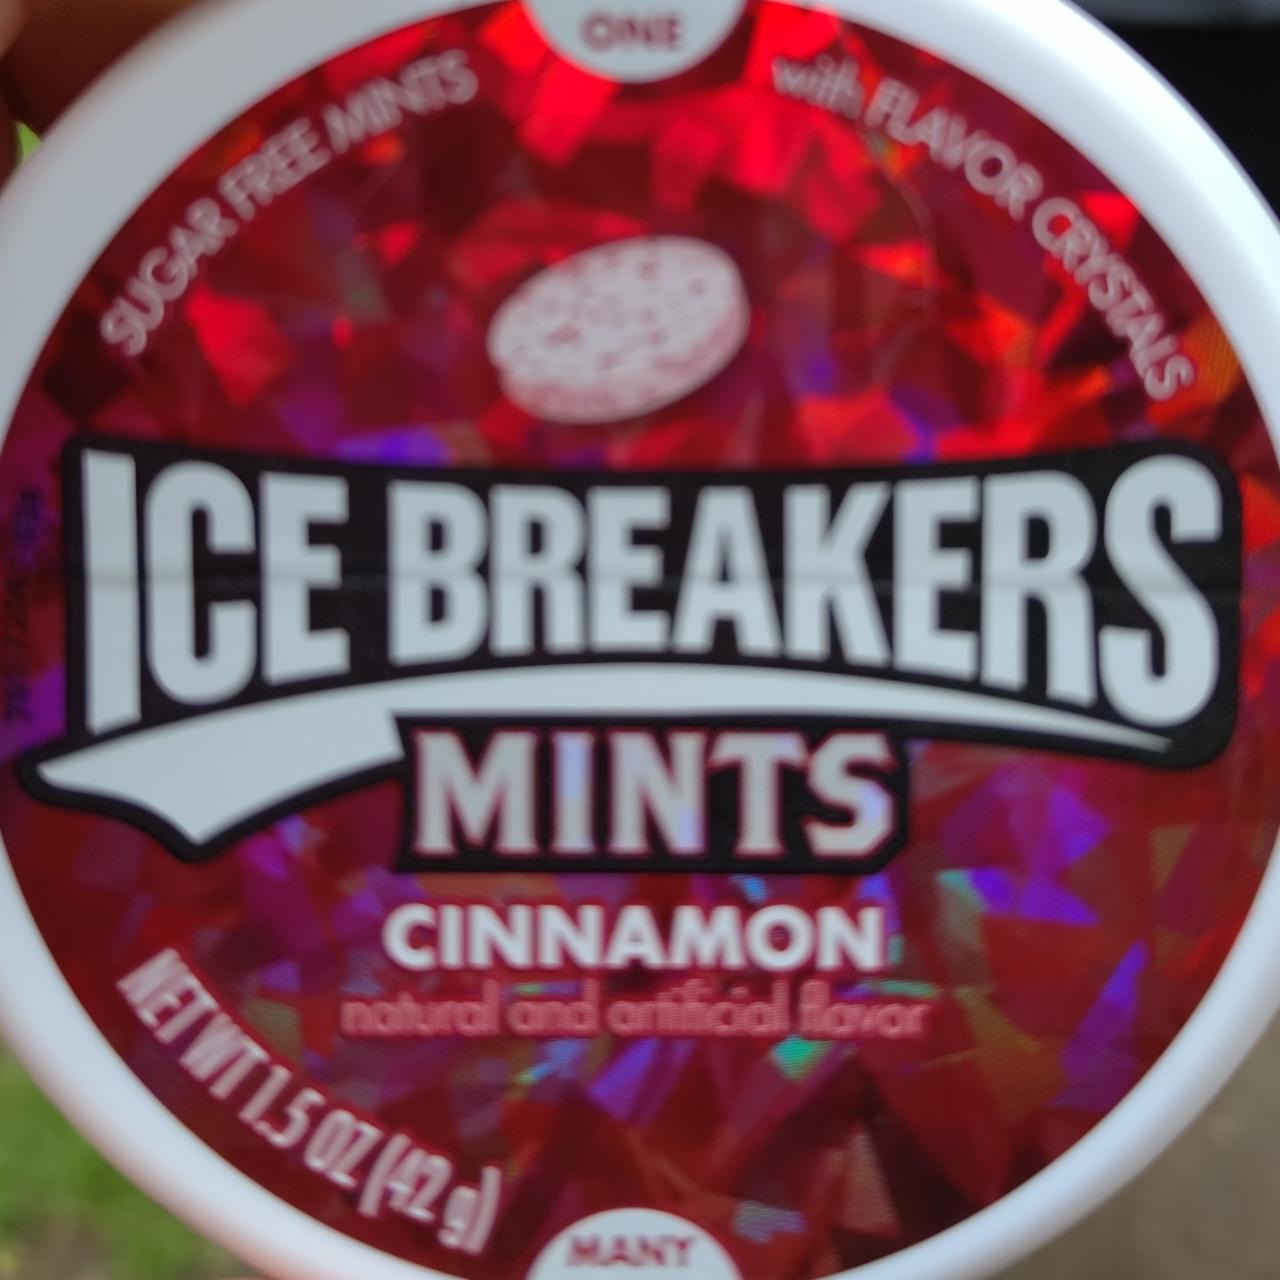 Fotografie - Mints Cinnamon Ice Breakers